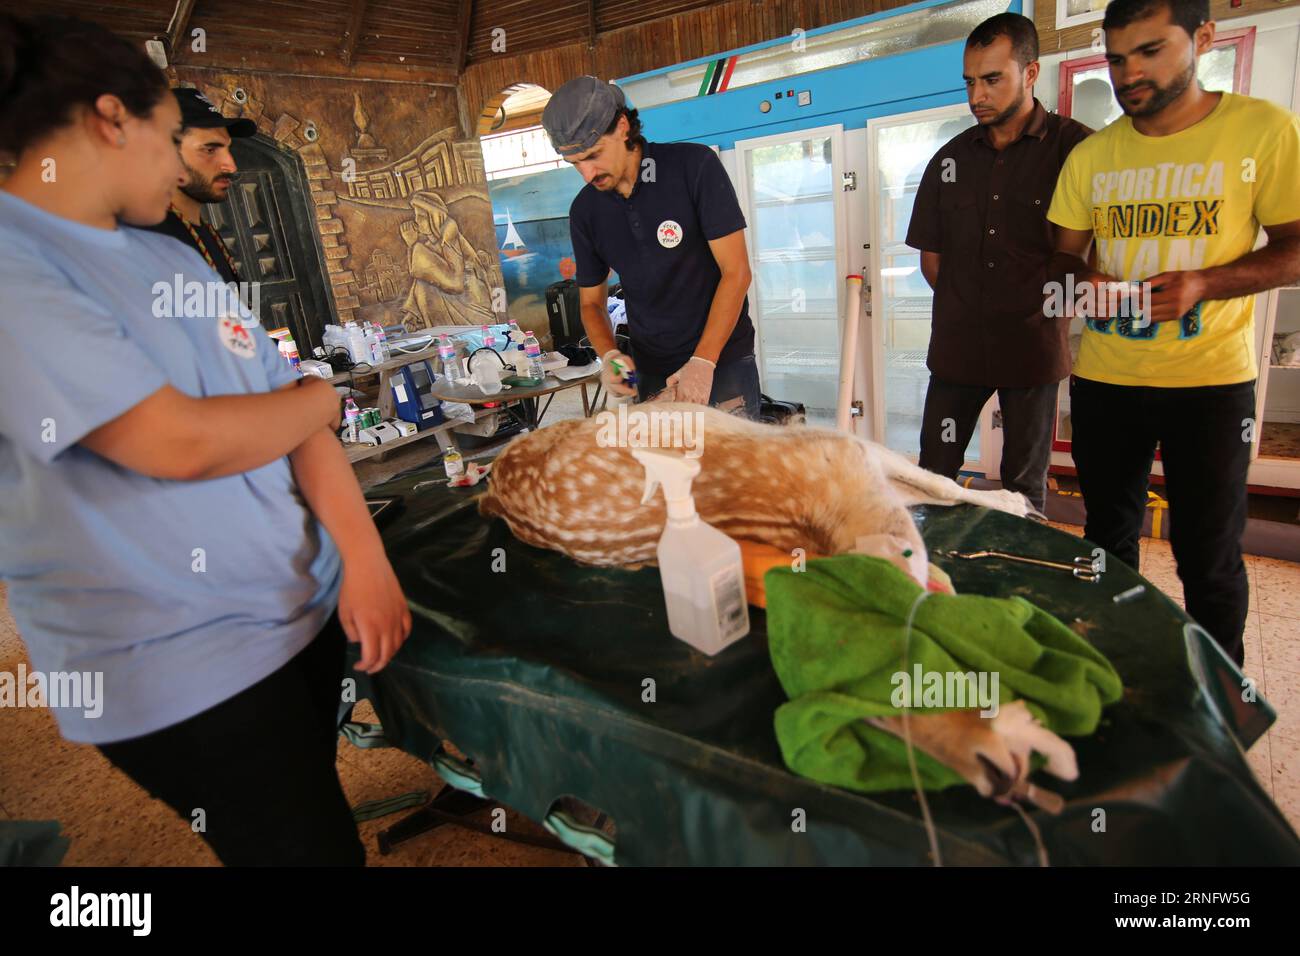 Un miembro del equipo de FOUR PAWS International da un tratamiento de ciervos en un zoológico en la ciudad de Khan Younis, en el sur de la Franja de Gaza, el 23 de agosto de 2016. Un grupo de veterinarios designados por el grupo con sede en Austria Four Paws llegó a Gaza para tratar animales del Zoológico Sur, que fue dañado en los ataques israelíes contra Gaza. Los animales rescatados serán transportados a un centro de rescate en Jordania, ya que el zoológico no tiene la capacidad de darles el cuidado adecuado, según el propietario del zoológico. MIDEAST-GAZA-ZOO AMIMALS-TRATAMIENTO KhaledxOmar PUBLICATIONxNOTxINxCHN Un miembro del equipo internacional Four Paws da un ciervo Tre Foto de stock